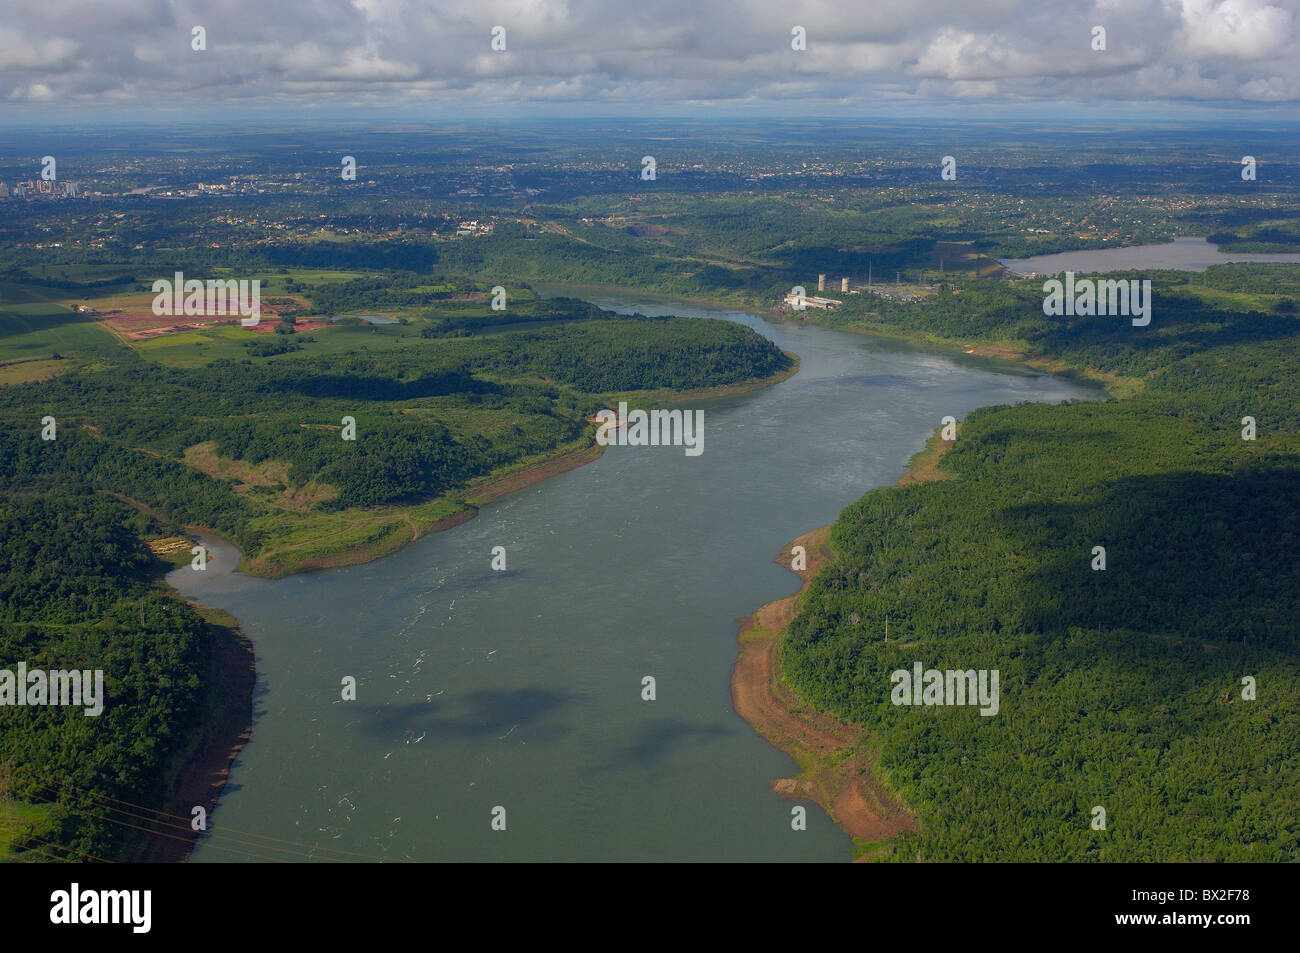 Paysage vue aérienne Photo aérienne le débit de la rivière Rio Parana Foz do Iguaçu Iguaçu Chutes d'Iguaçu Paraná Brésil Banque D'Images